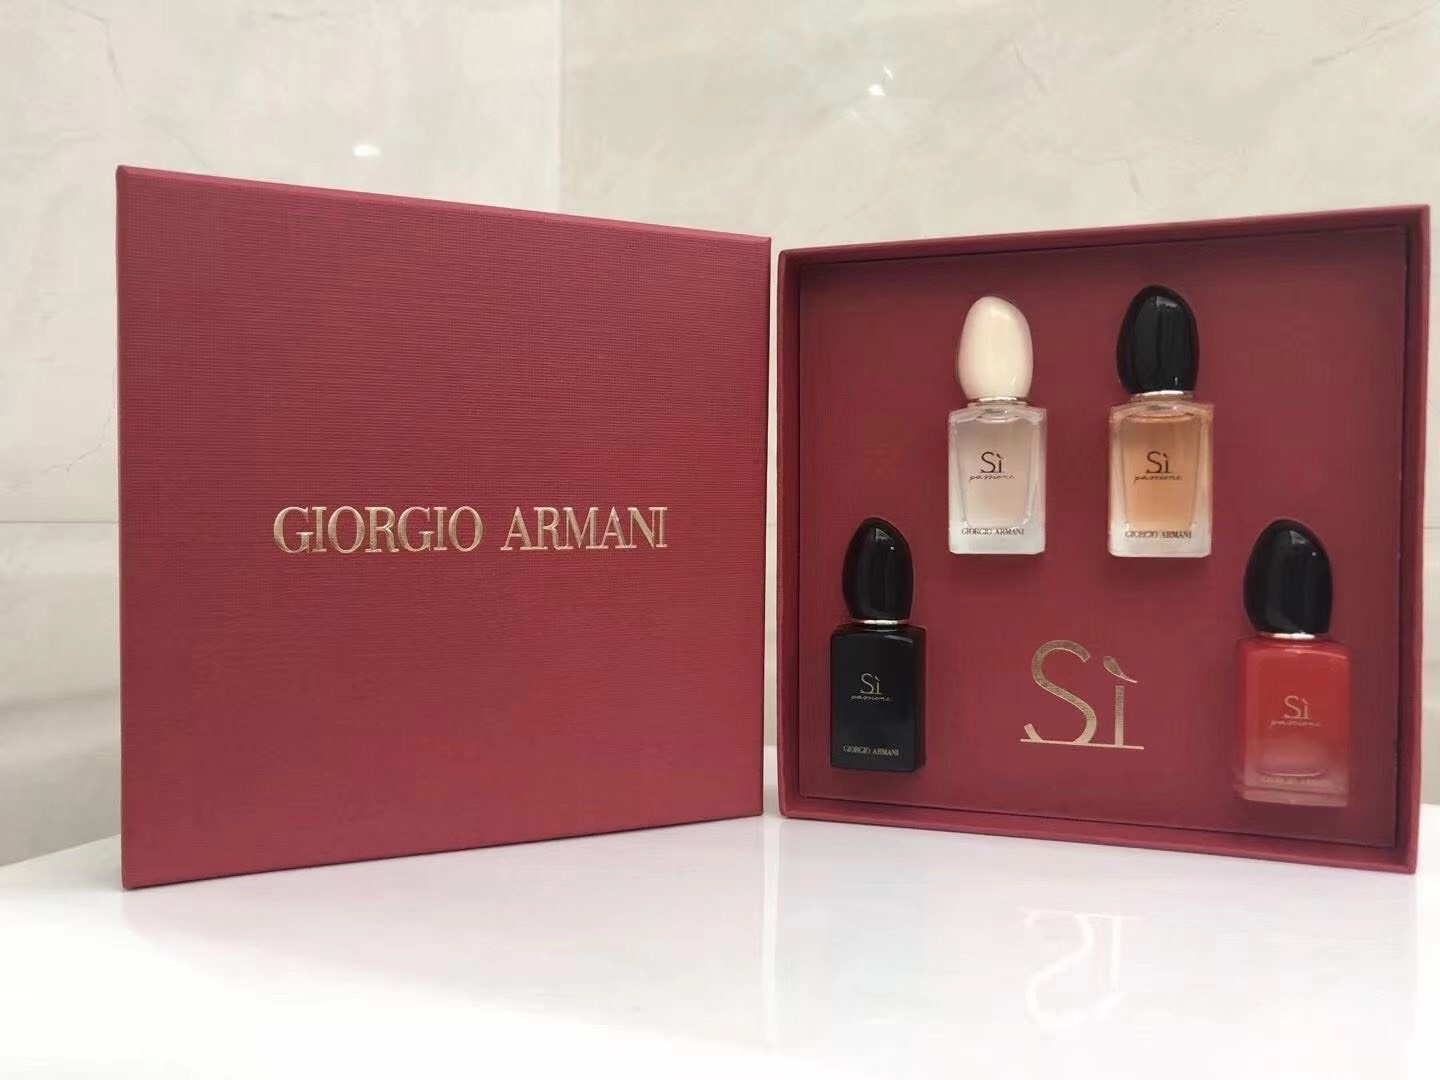 น้ำหอมเทสเตอร์ Giorgio armani for women  7ml.×4 ชิ้น แพคกล่องของขวัญสวยหรู(จตุรัส)